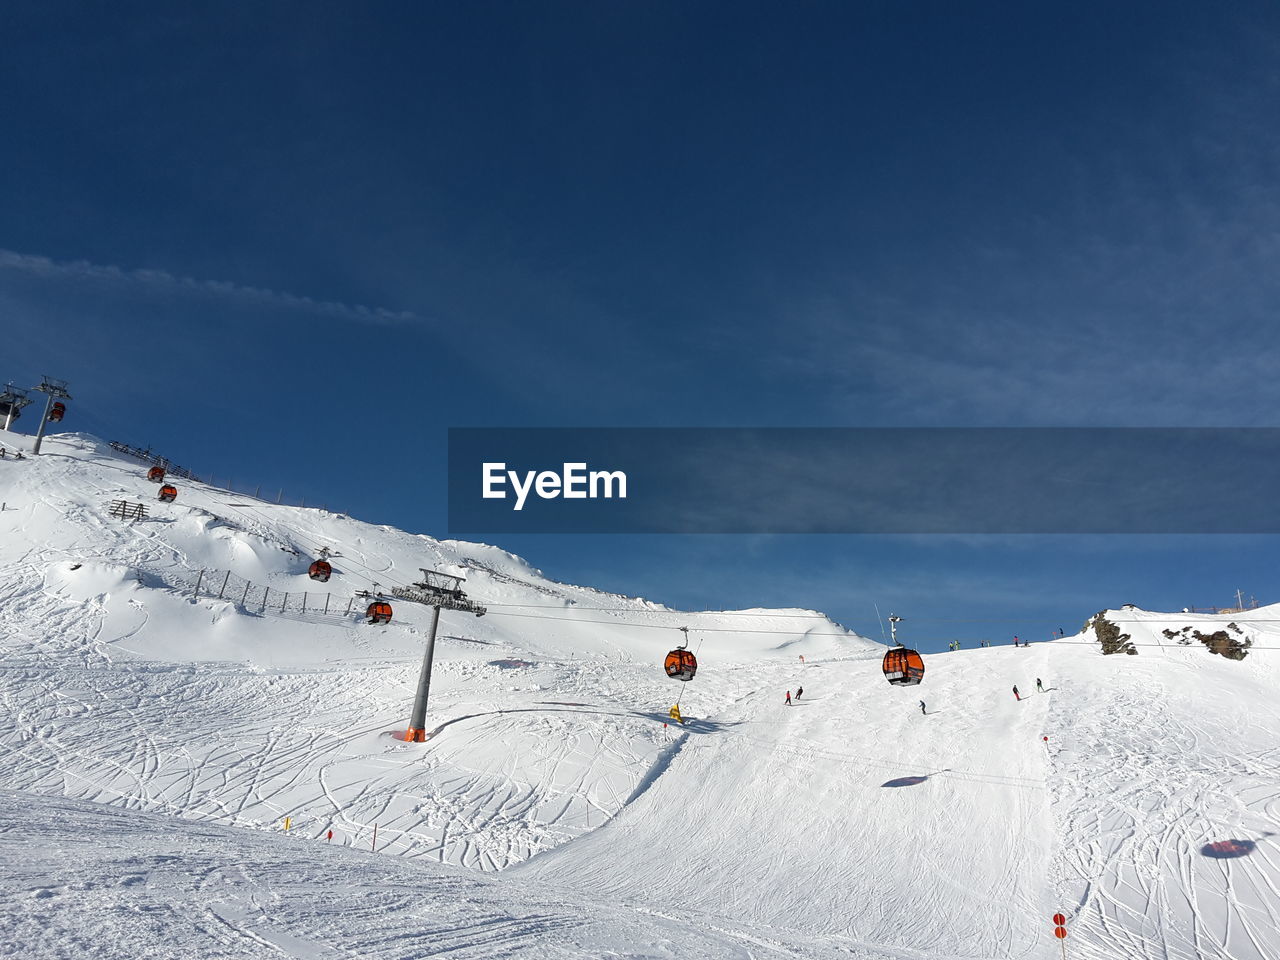 Ski lifts in königsleiten, austria